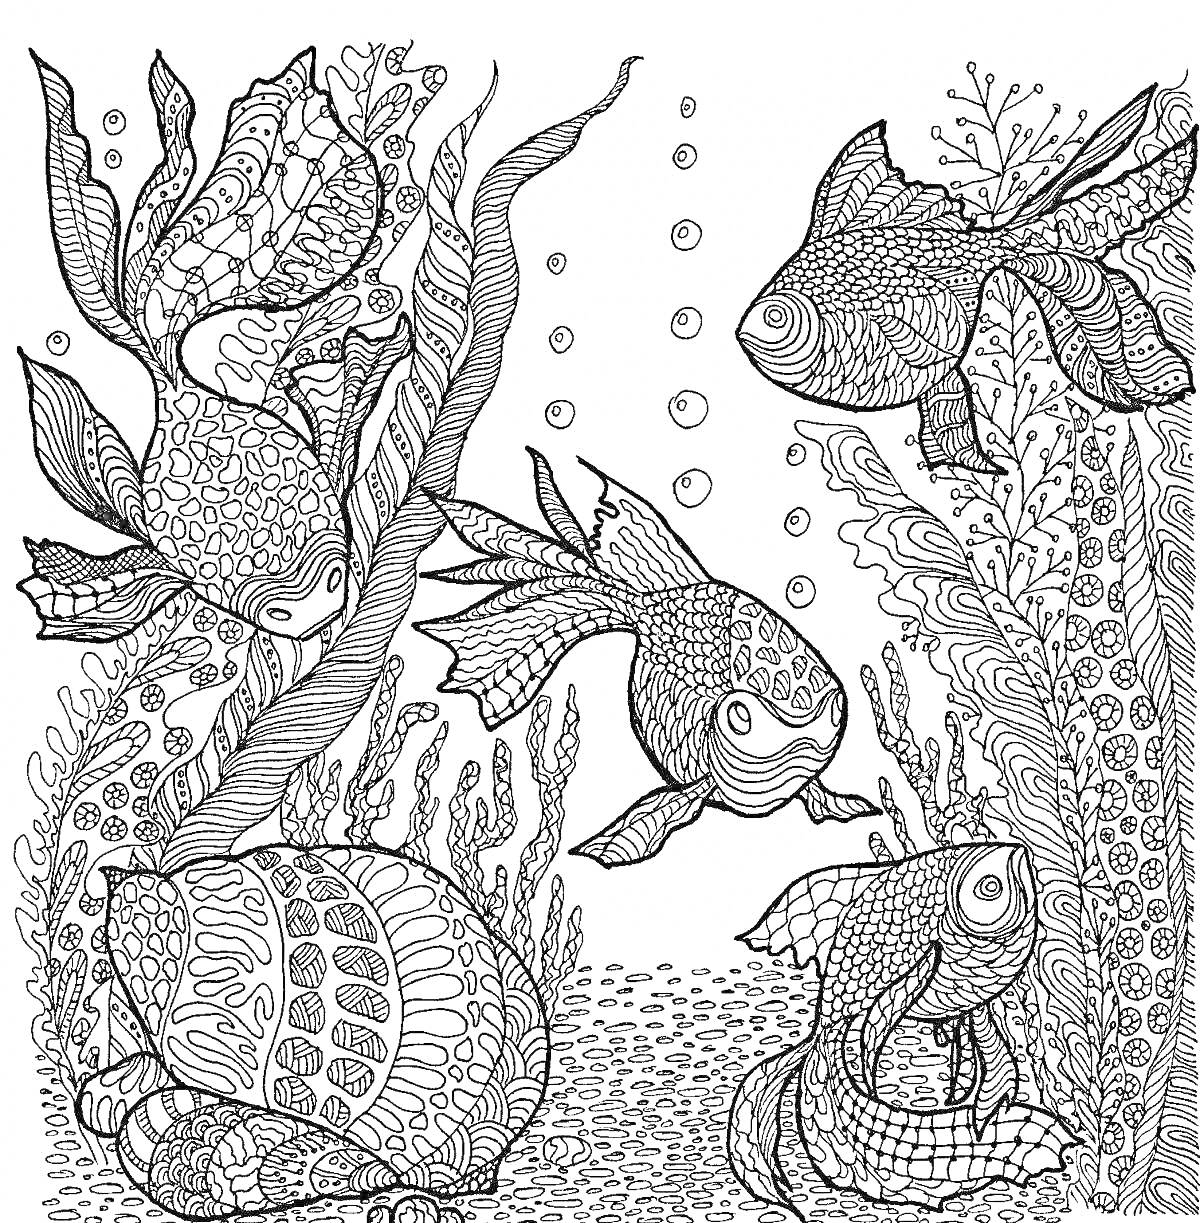 Раскраска Панорама морских обитателей с рыбами, водорослями и пузырями